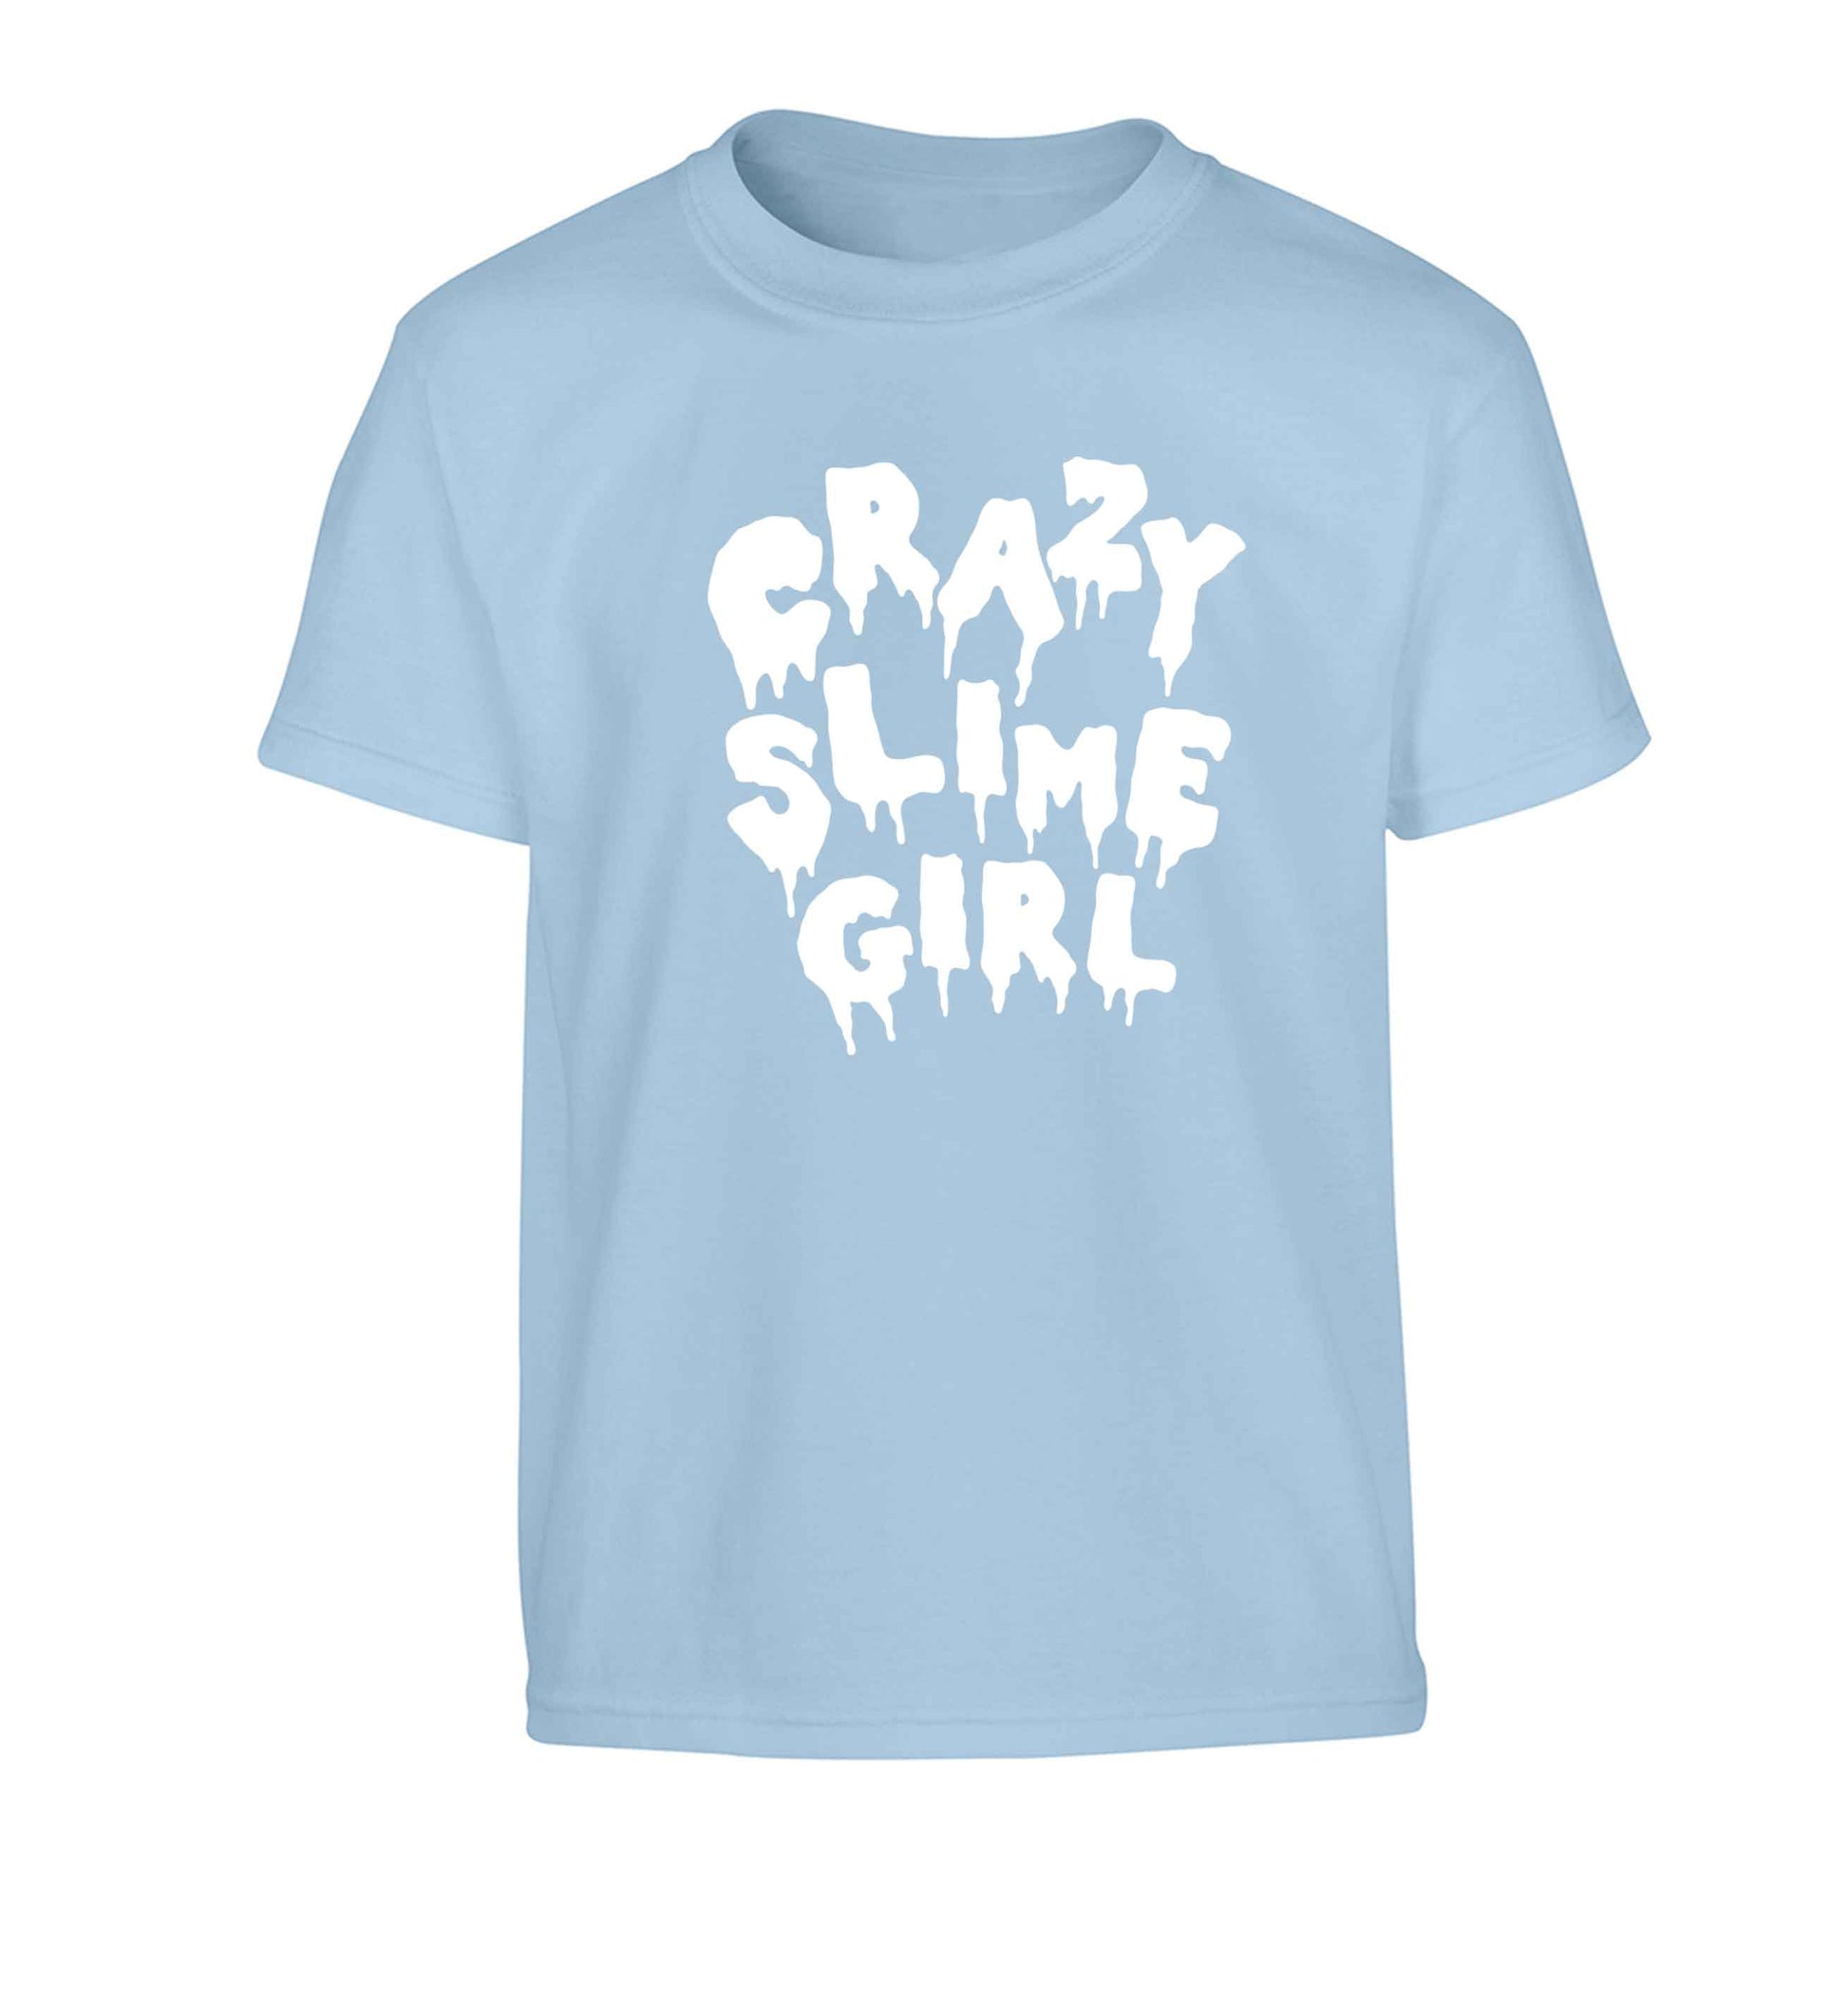 Crazy slime girl Children's light blue Tshirt 12-13 Years